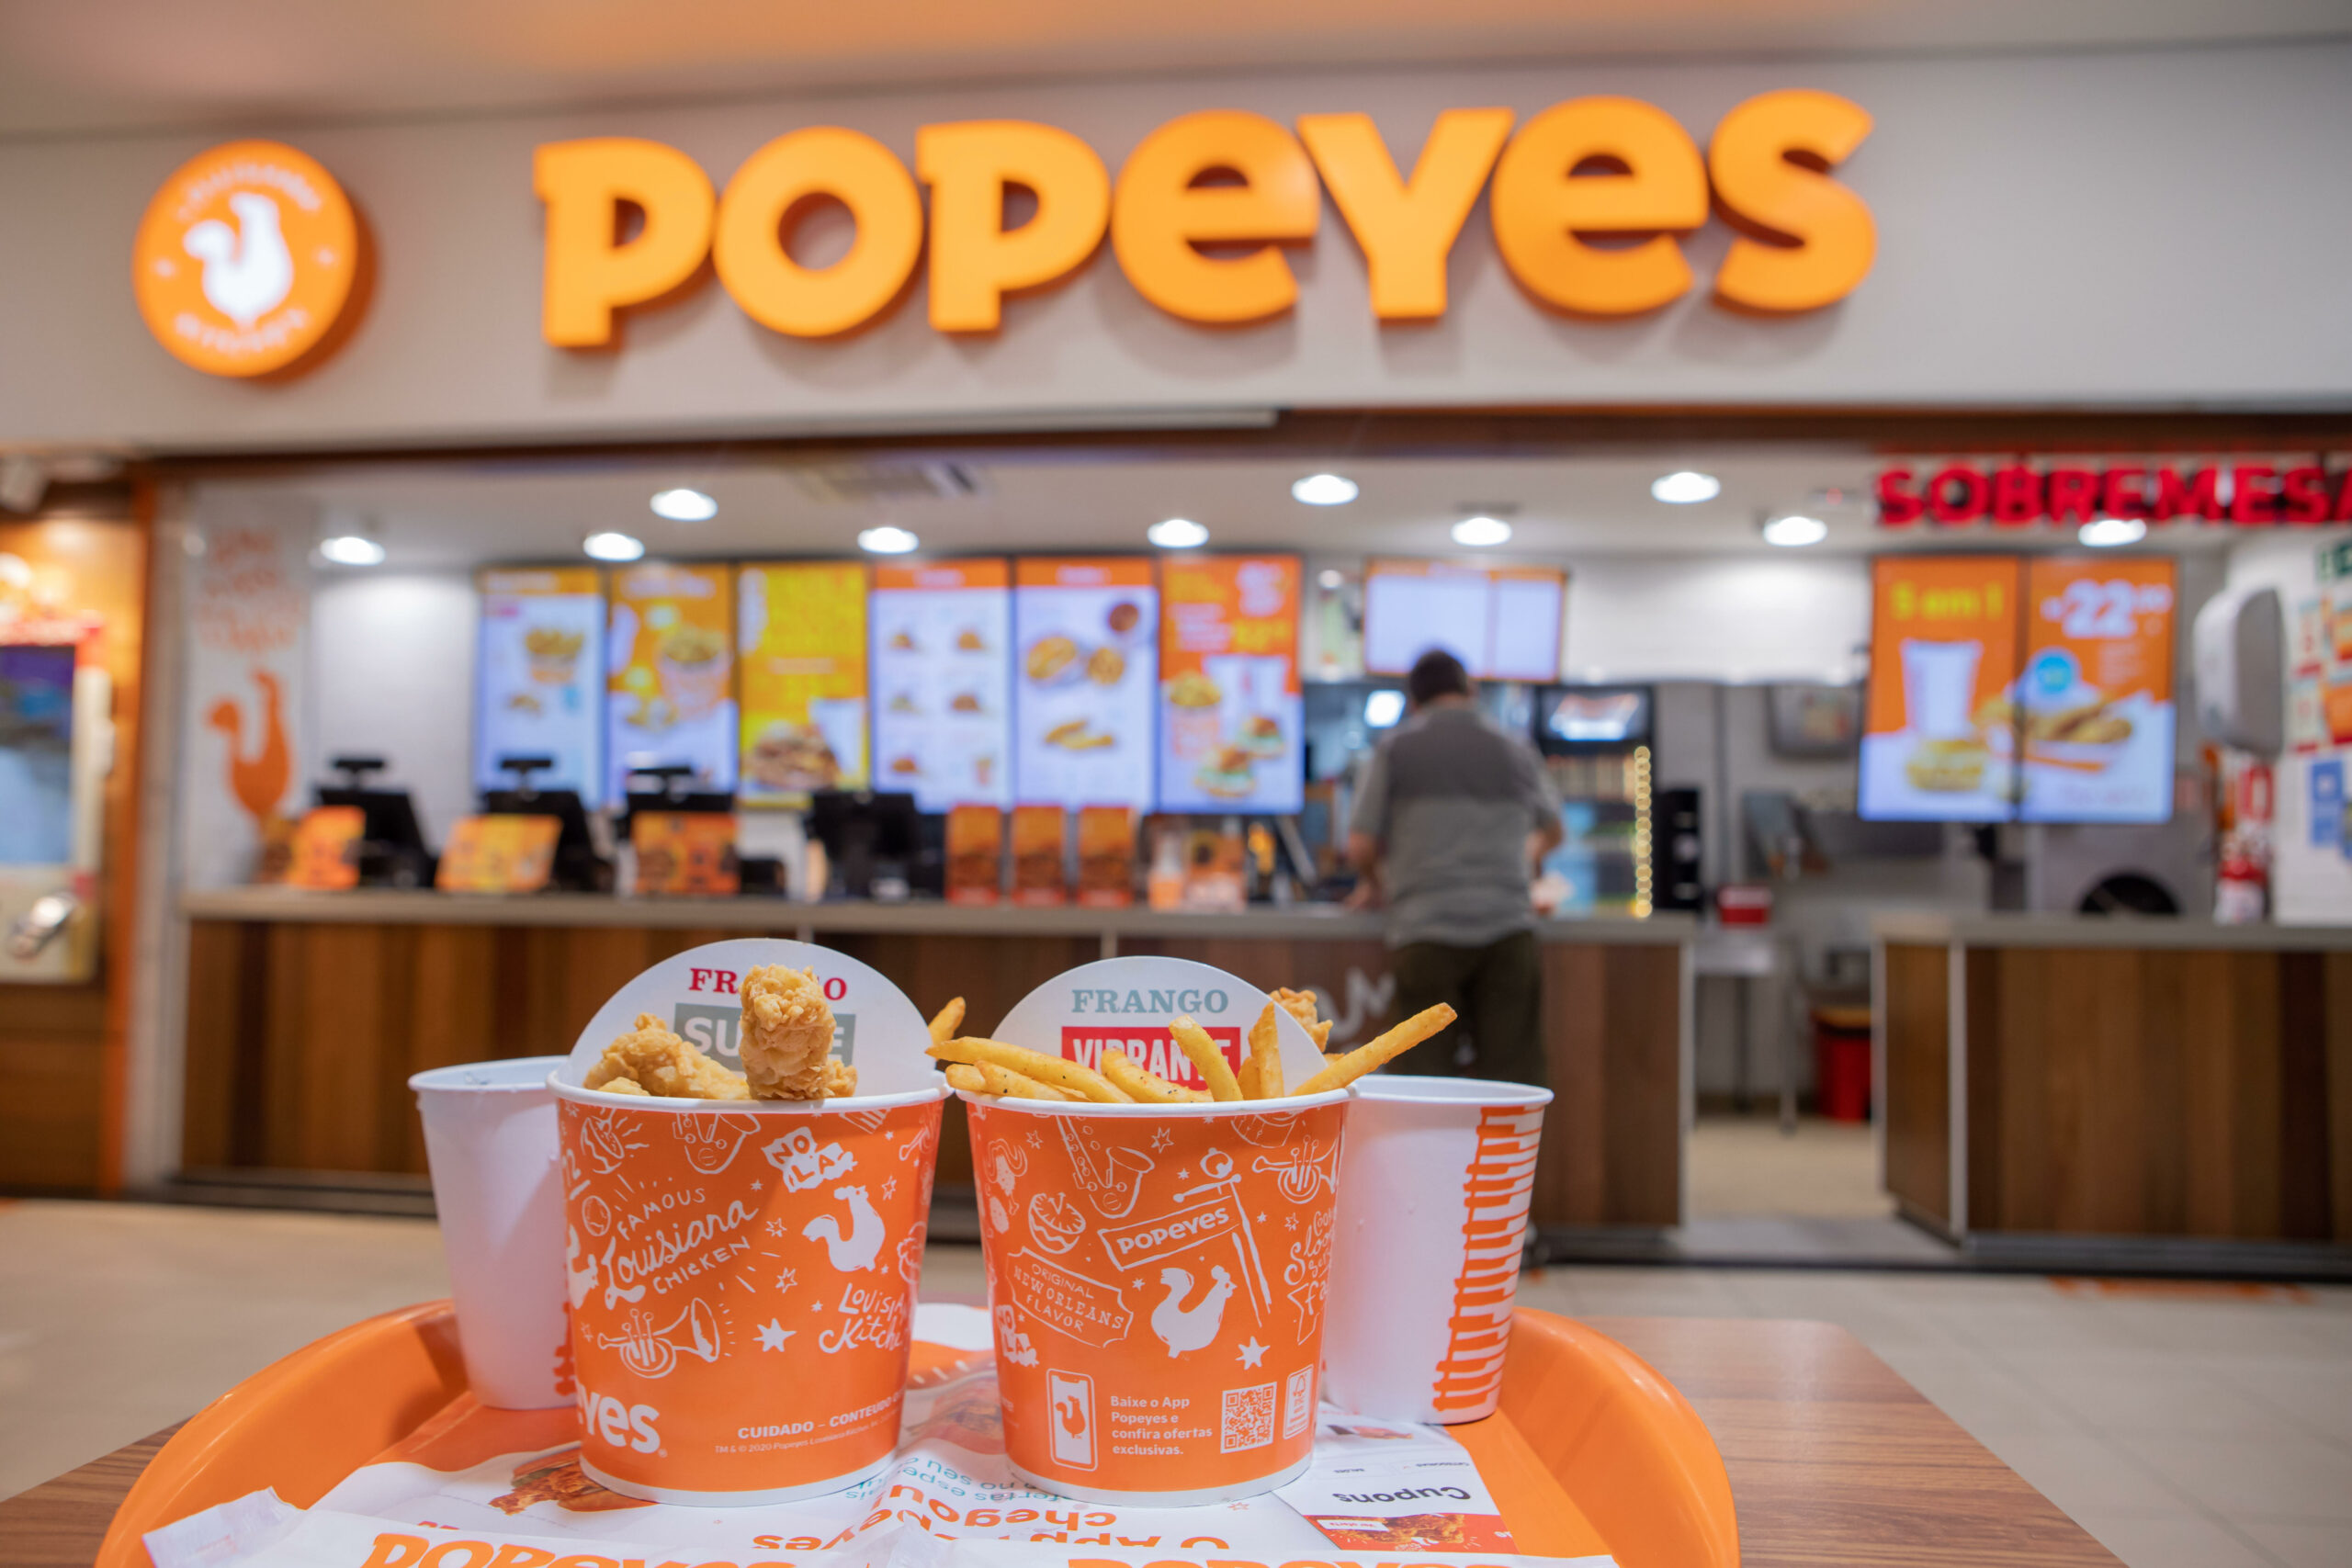 Restaurante Popeyes fará degustação gratuita de frango frito neste sábado em Salvador